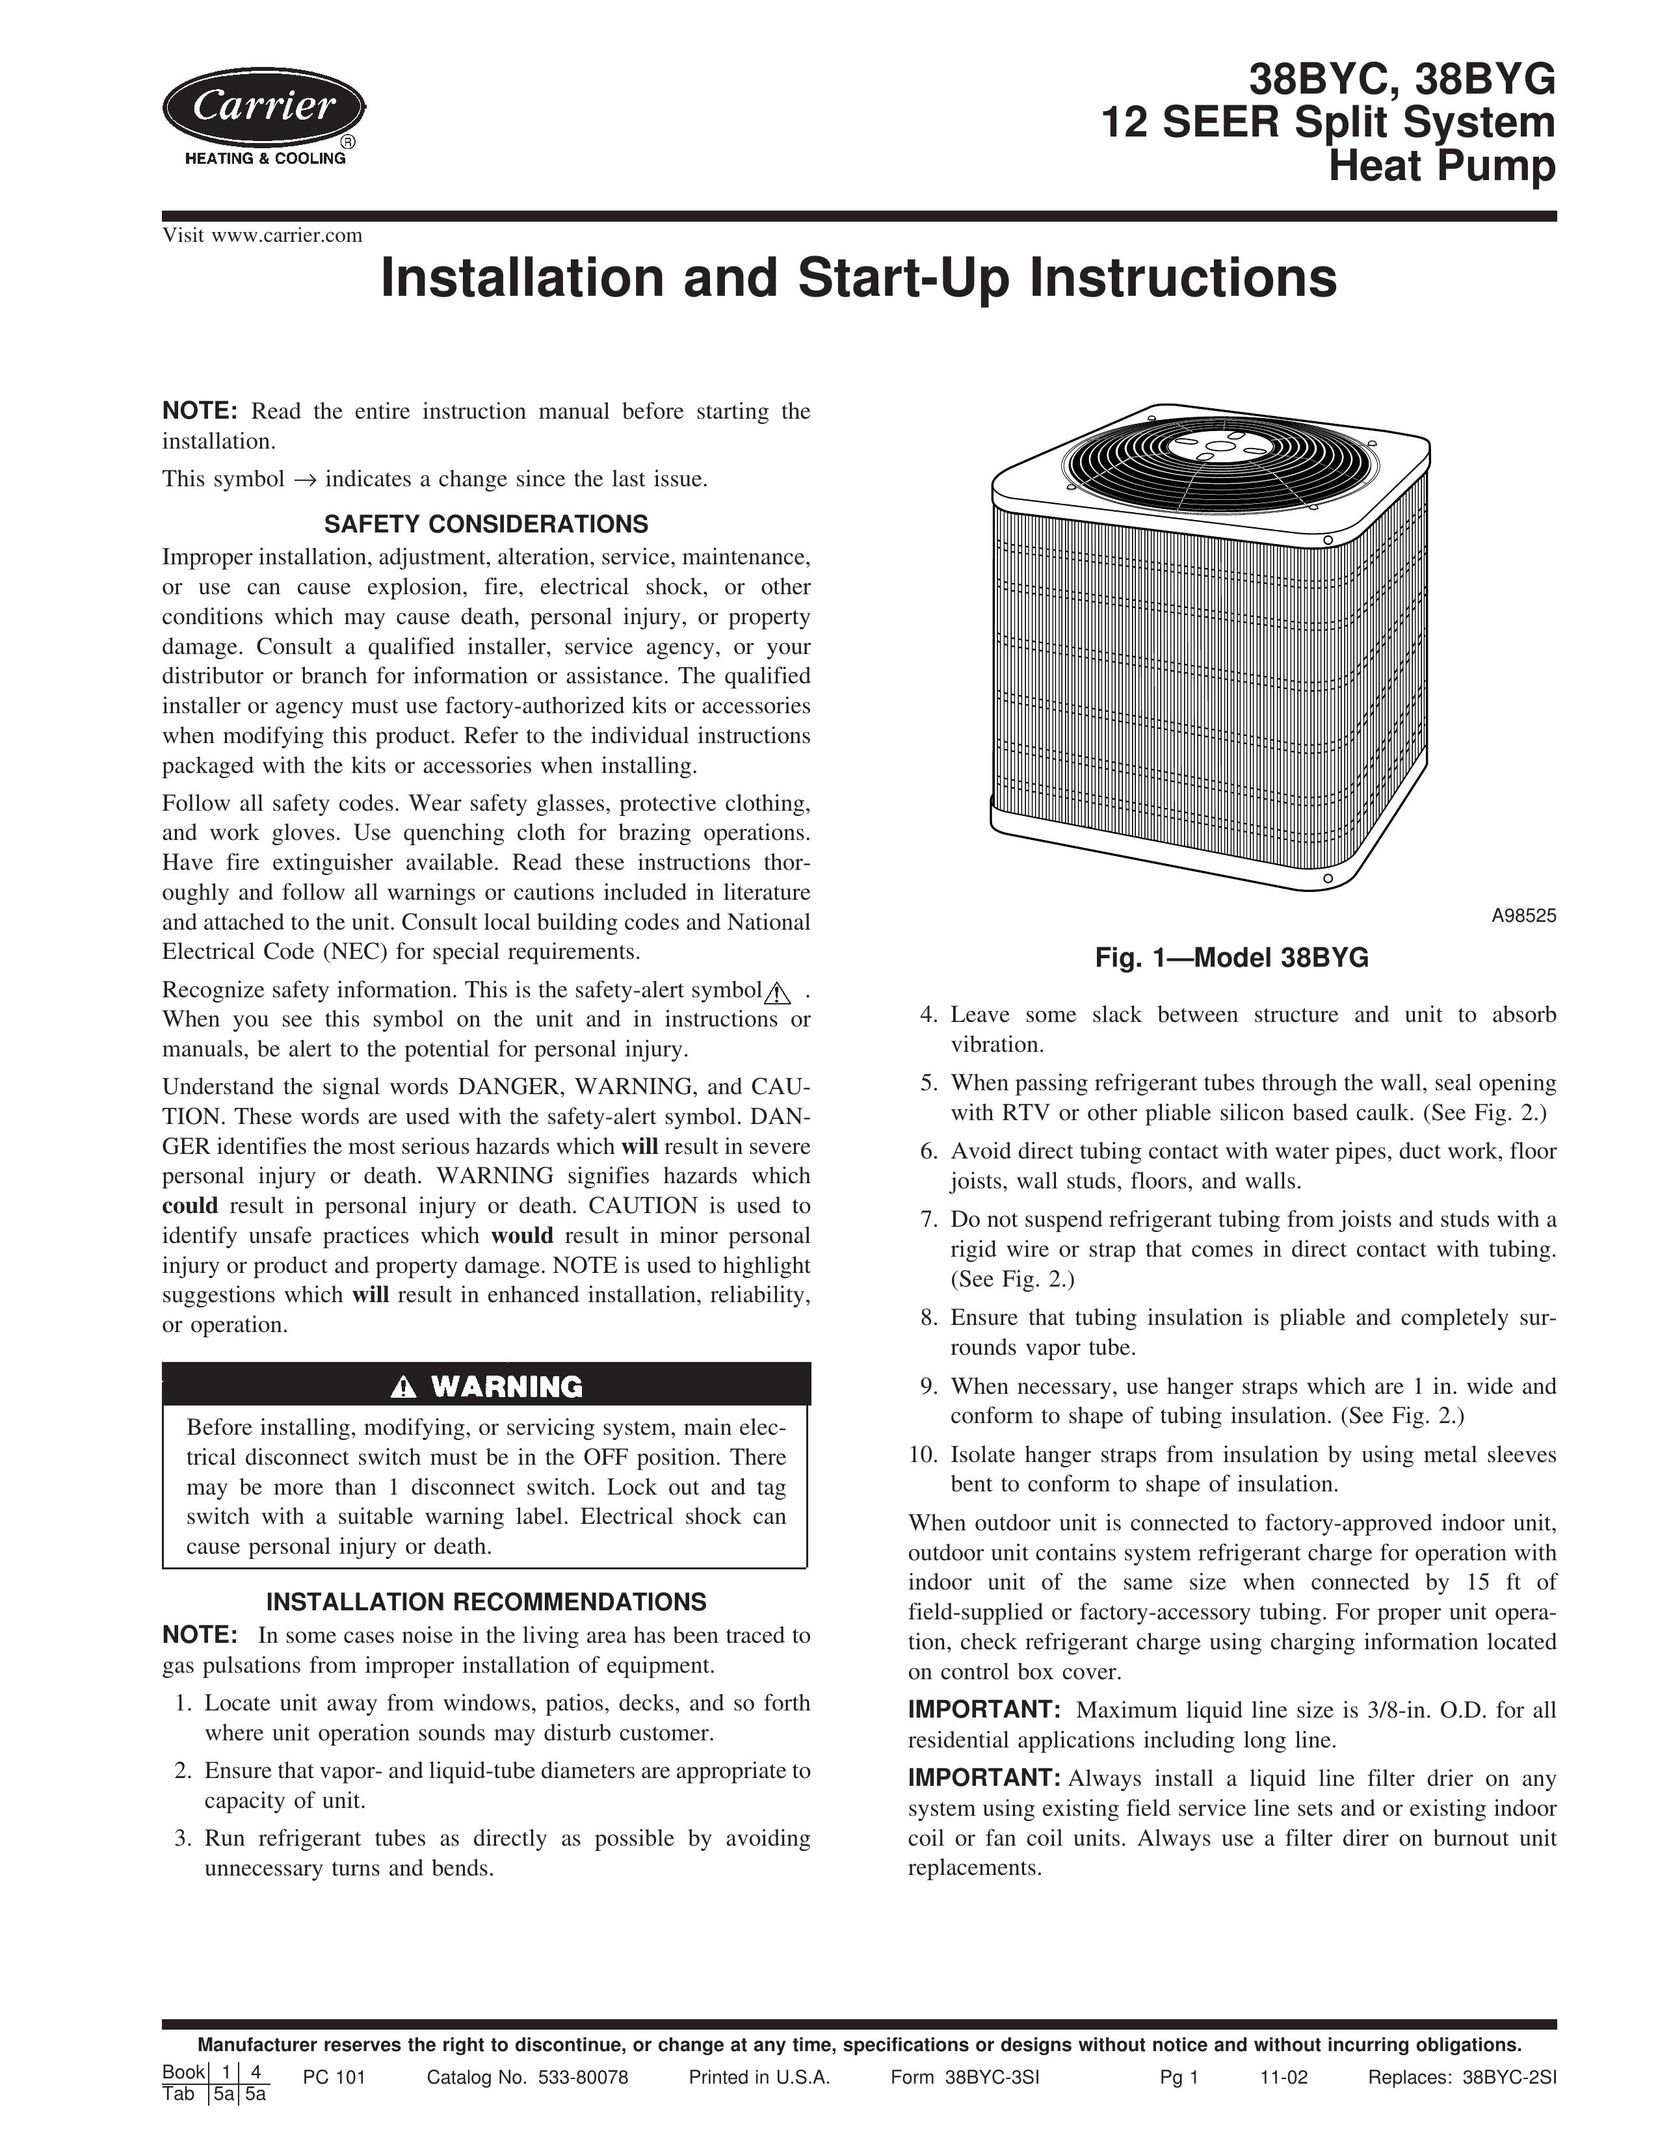 Carrier 38BYG Heat Pump User Manual